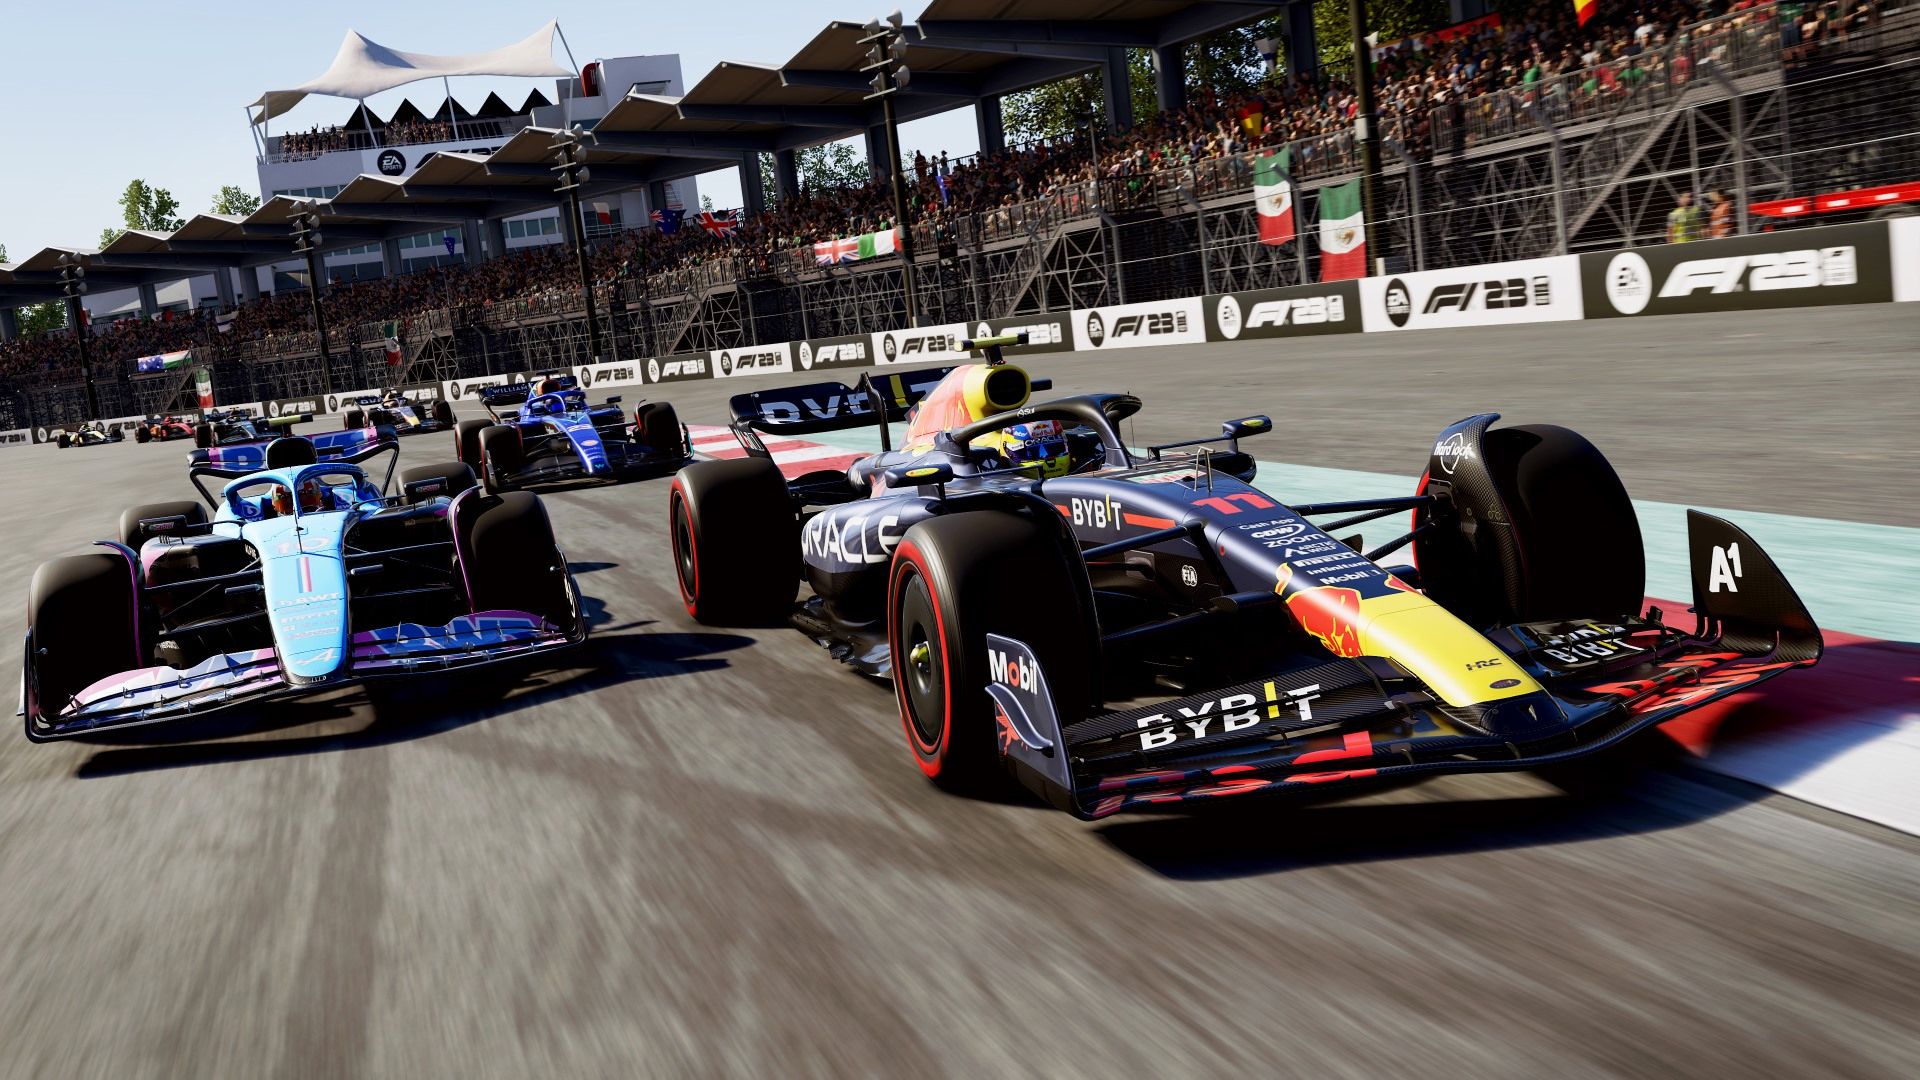 F1 23 : PS4 vs PS5 